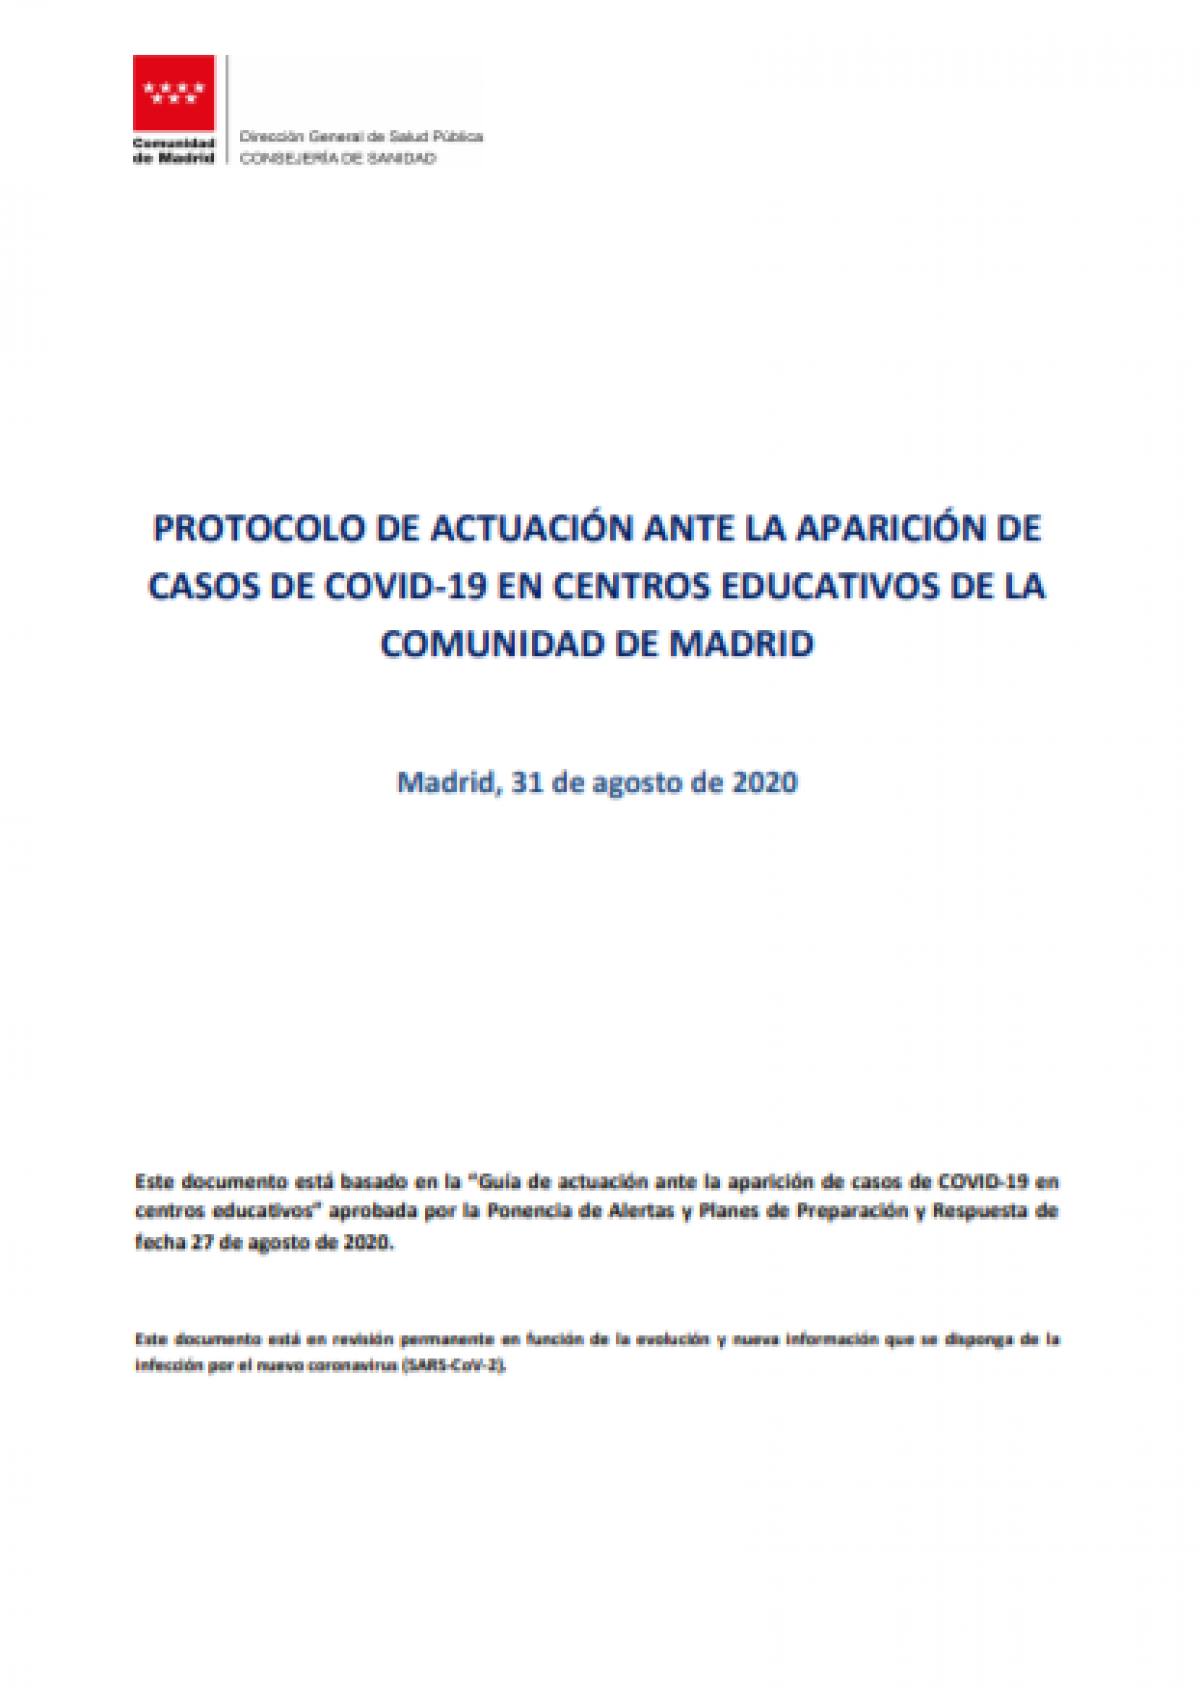 PROTOCOLO DE ACTUACIN ANTE LA APARICIN DE CASOS DE COVID-19 EN CENTROS EDUCATIVOS DE LA COMUNIDAD DE MADRID